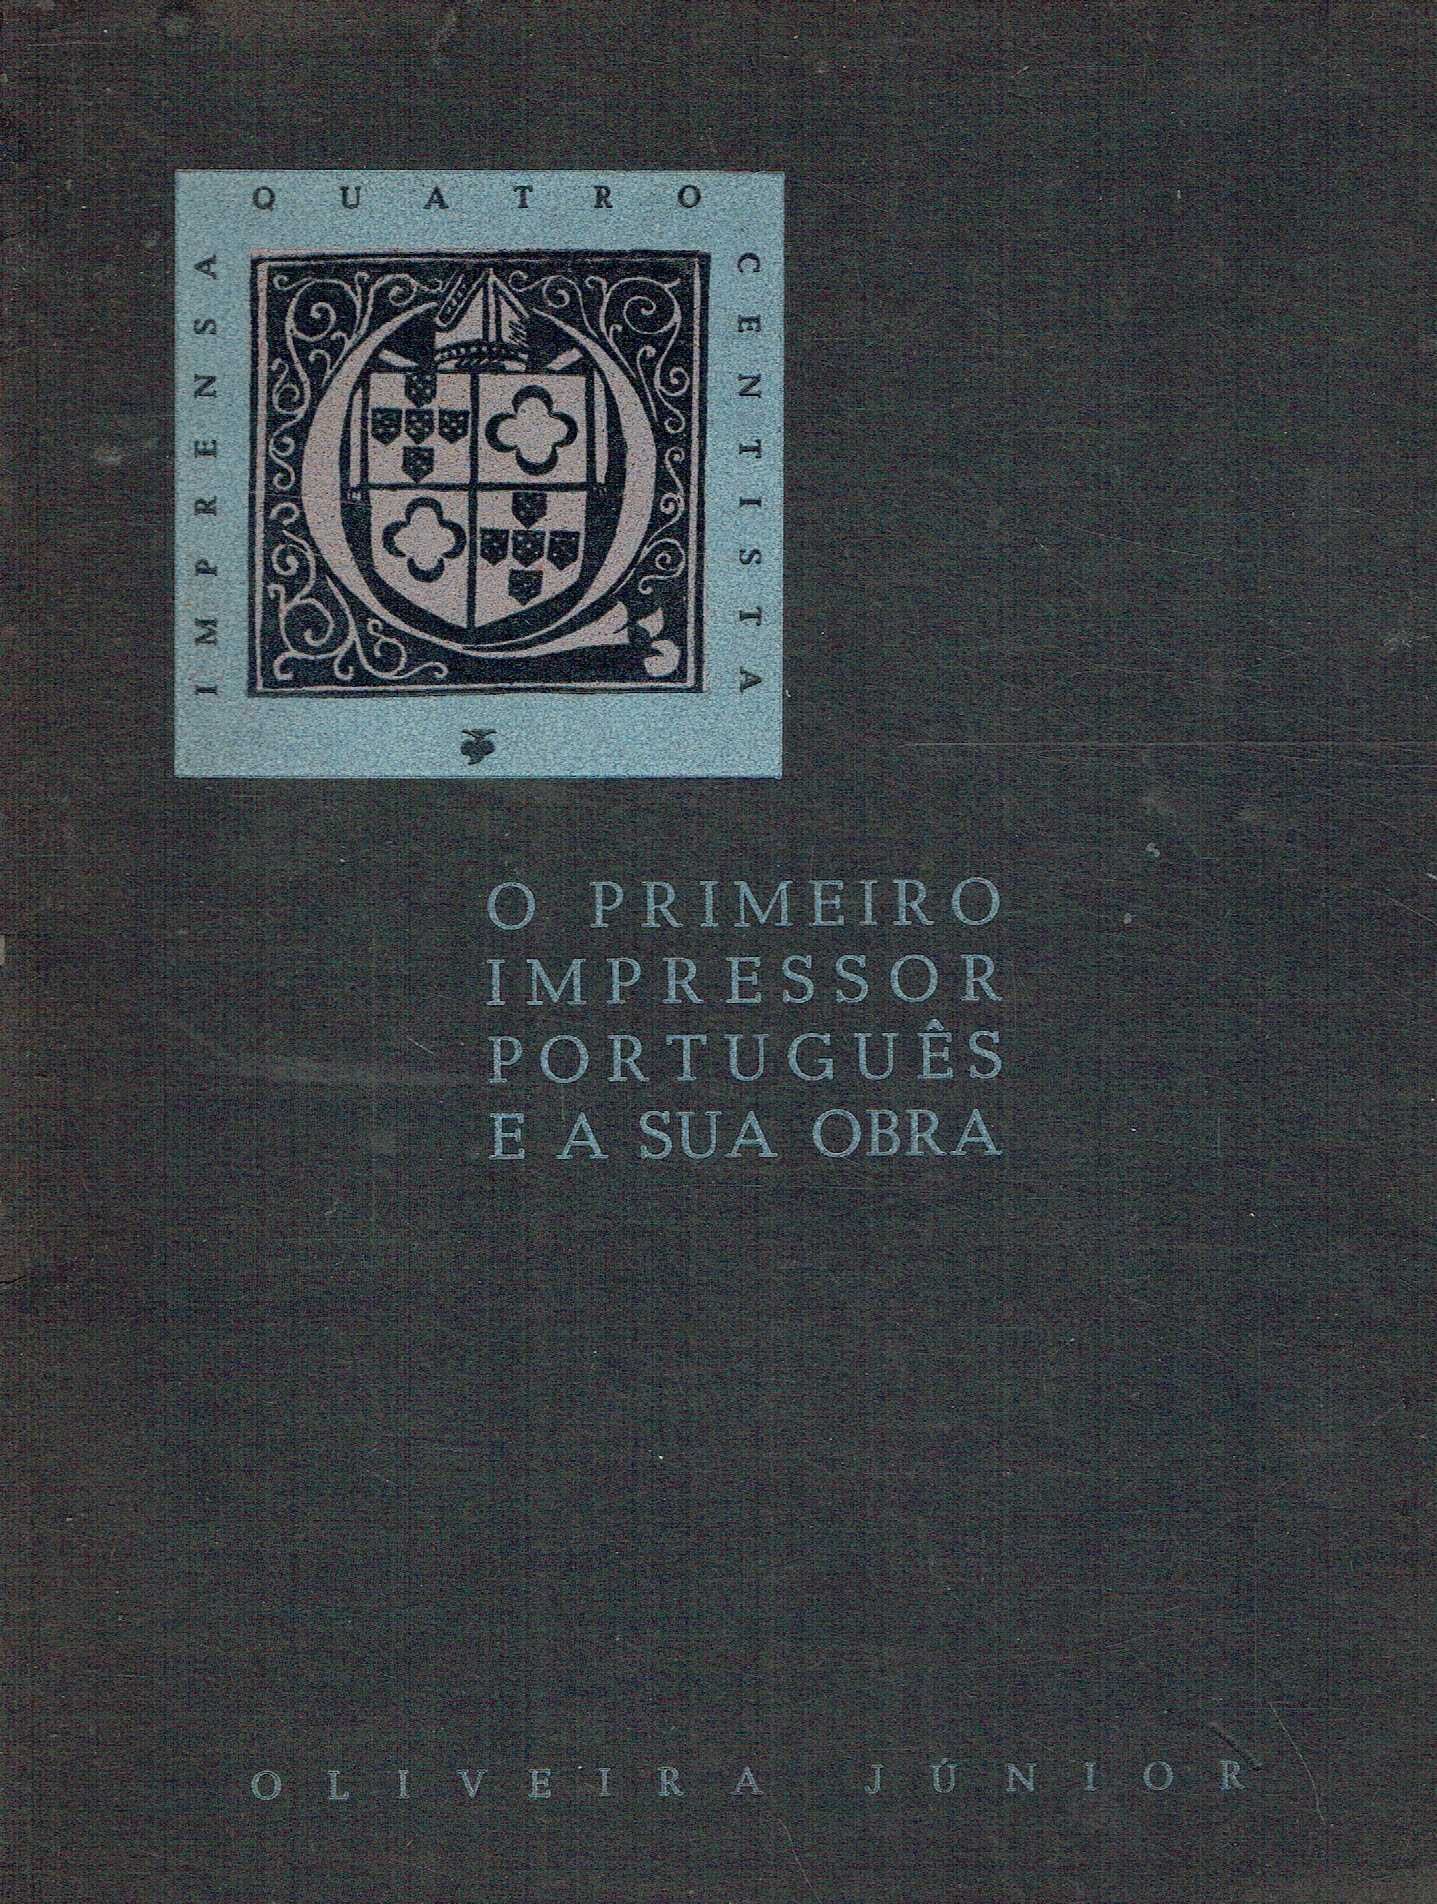 14968
O primeiro impressor português e a sua obra 
de Oliveira Júnior